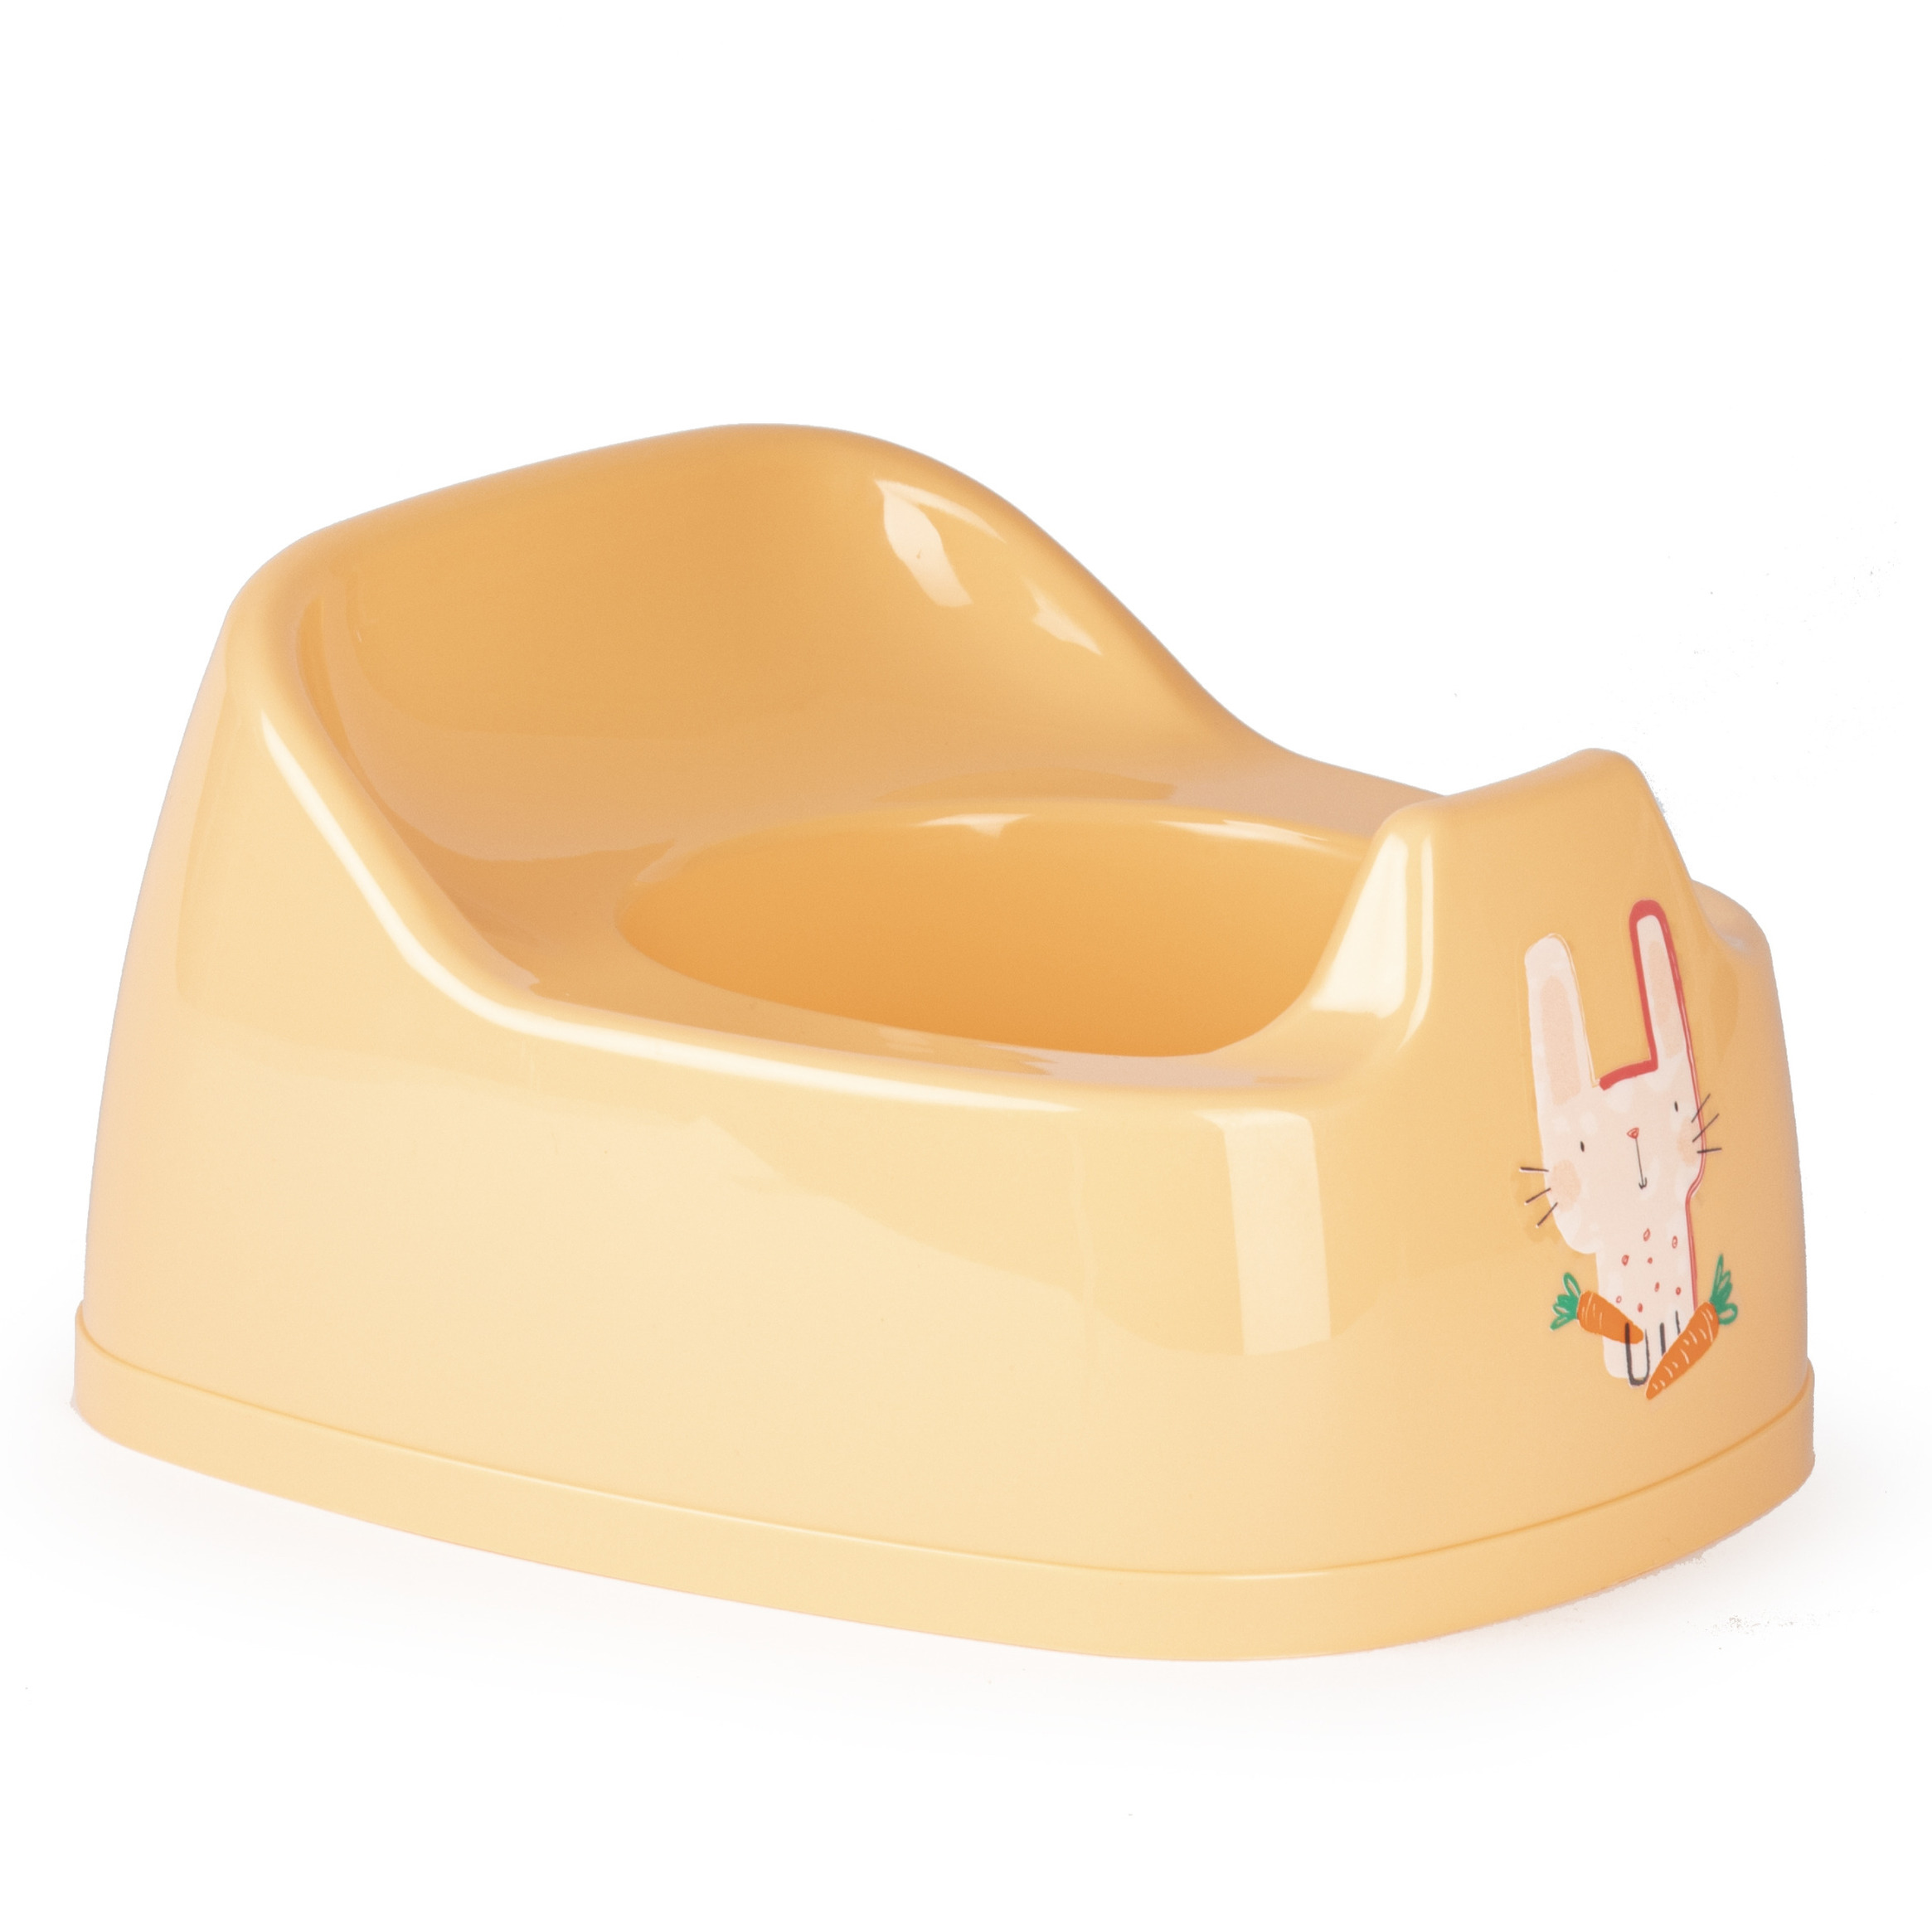 Baby-peuter plaspotje-wc potje oranje met willekeurige afbeelding op sticker 27 cm